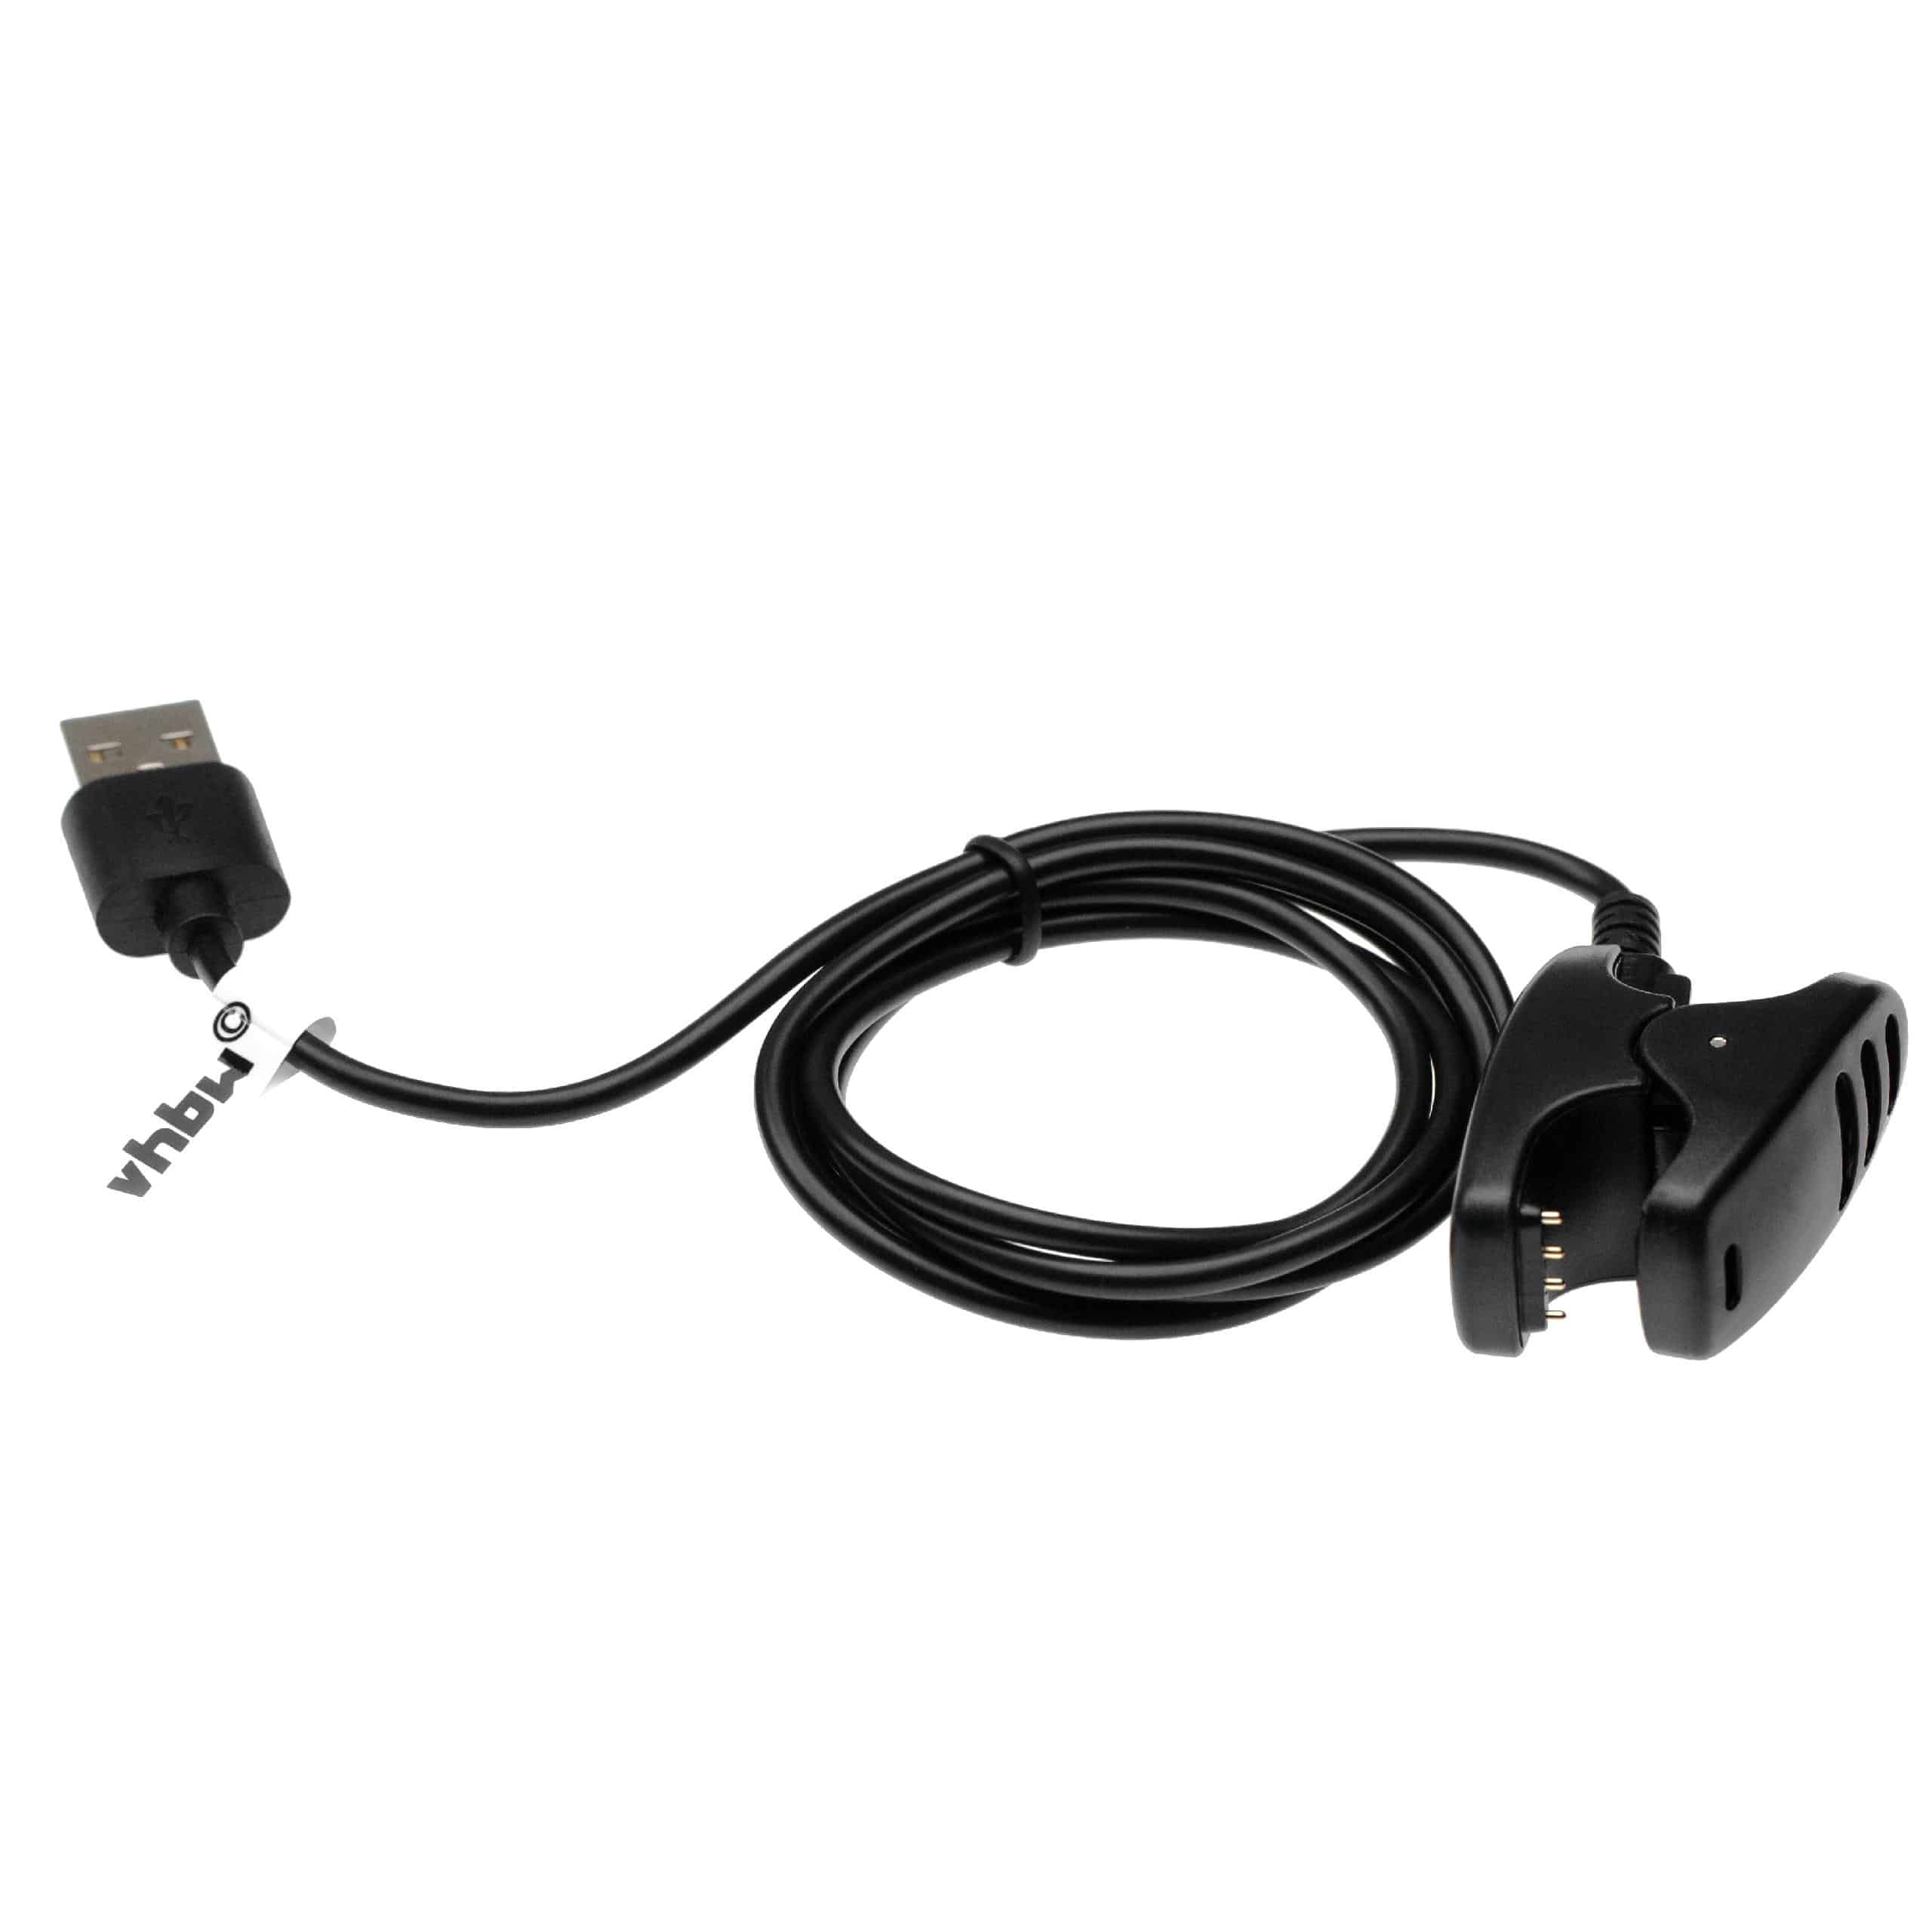 Cable de carga USB para smartwatch Suunto 3 Fitness, Spartan Trainer, 5 - negro 96 cm